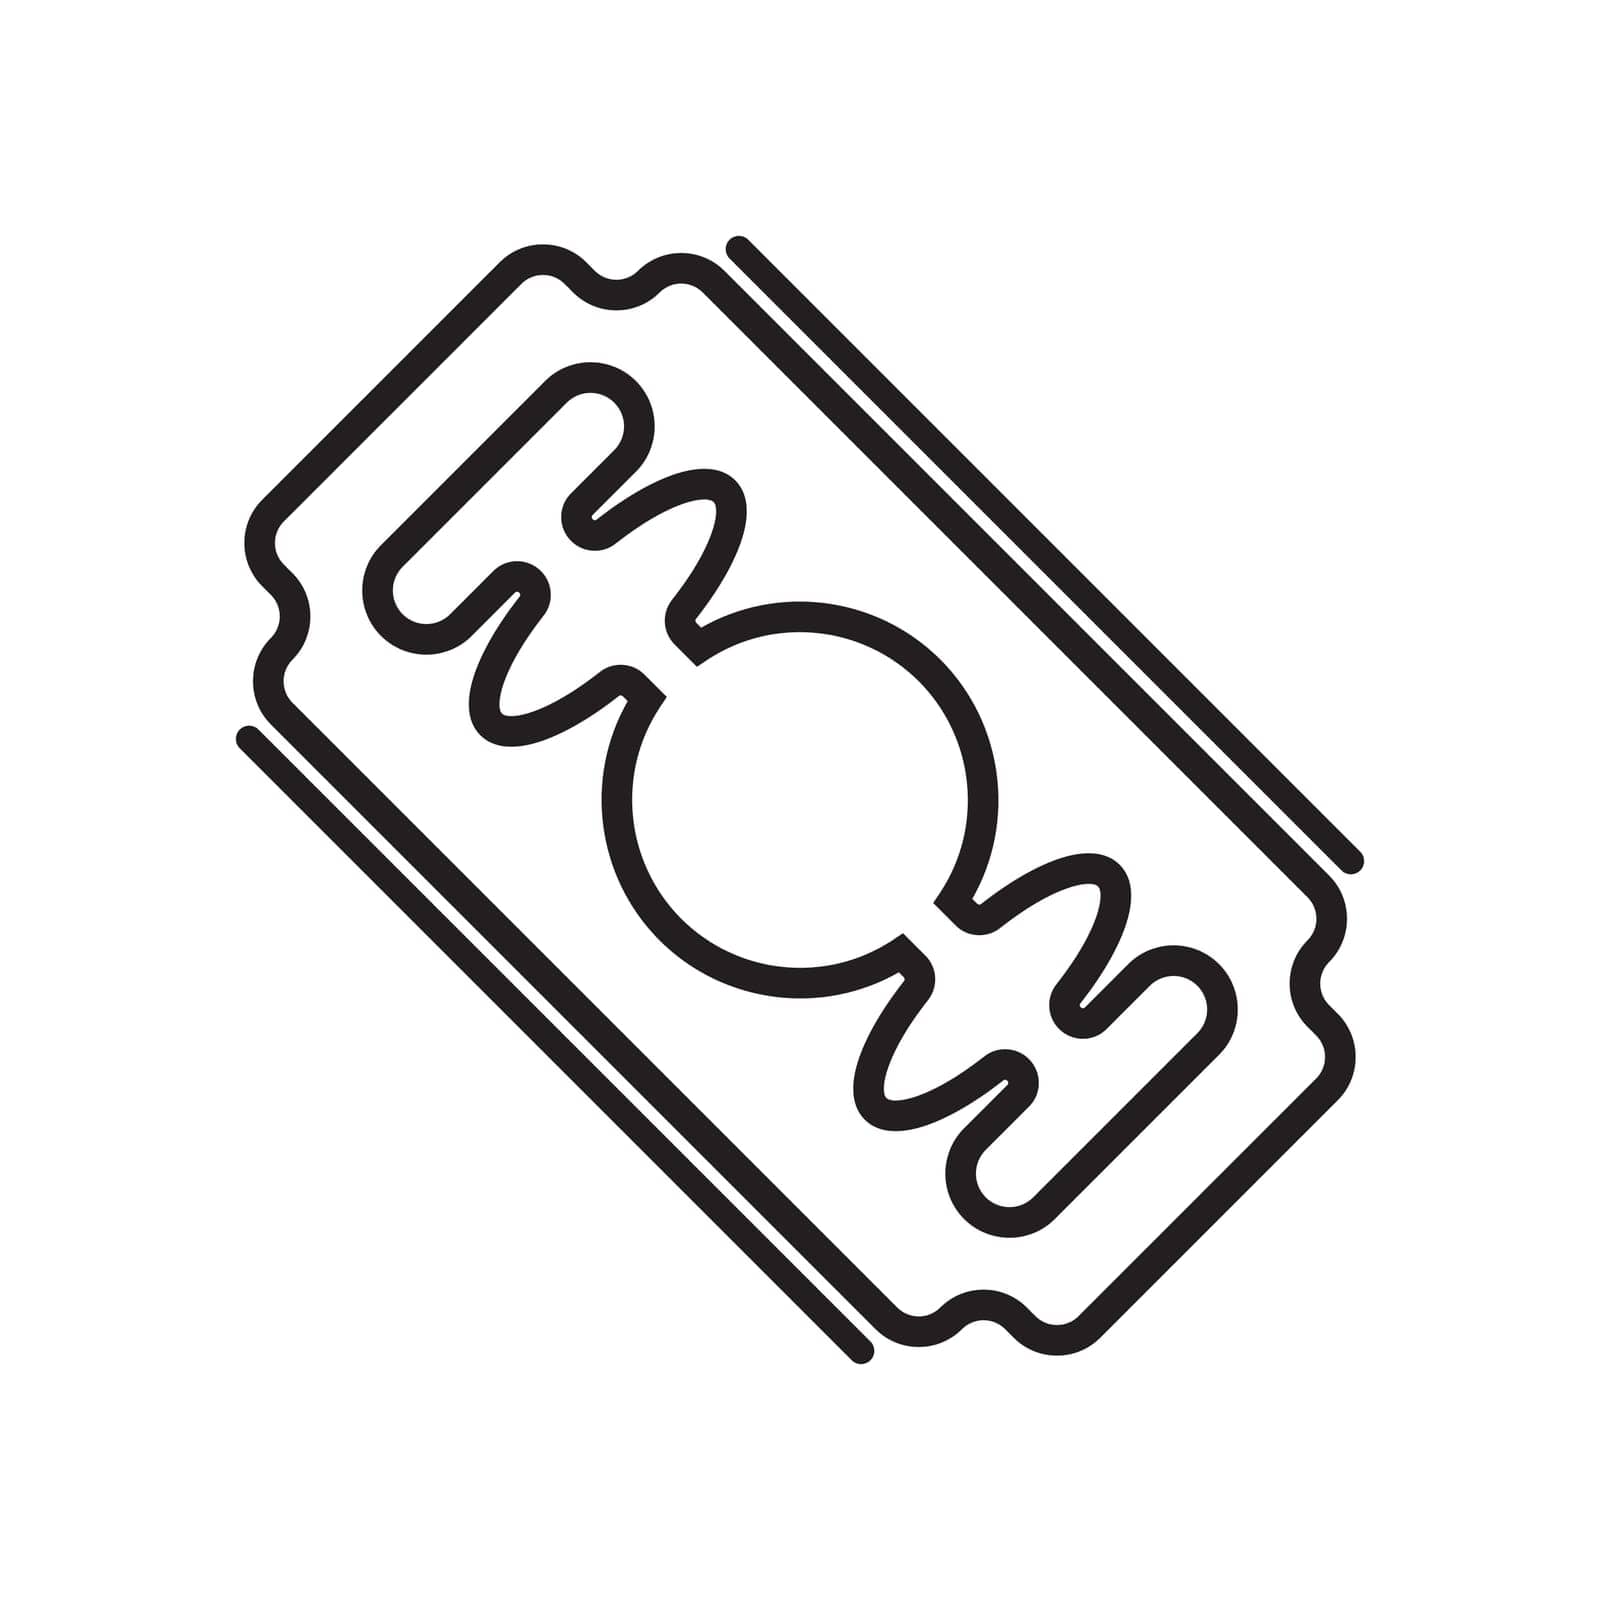 razor icon vector illustration simple logo design